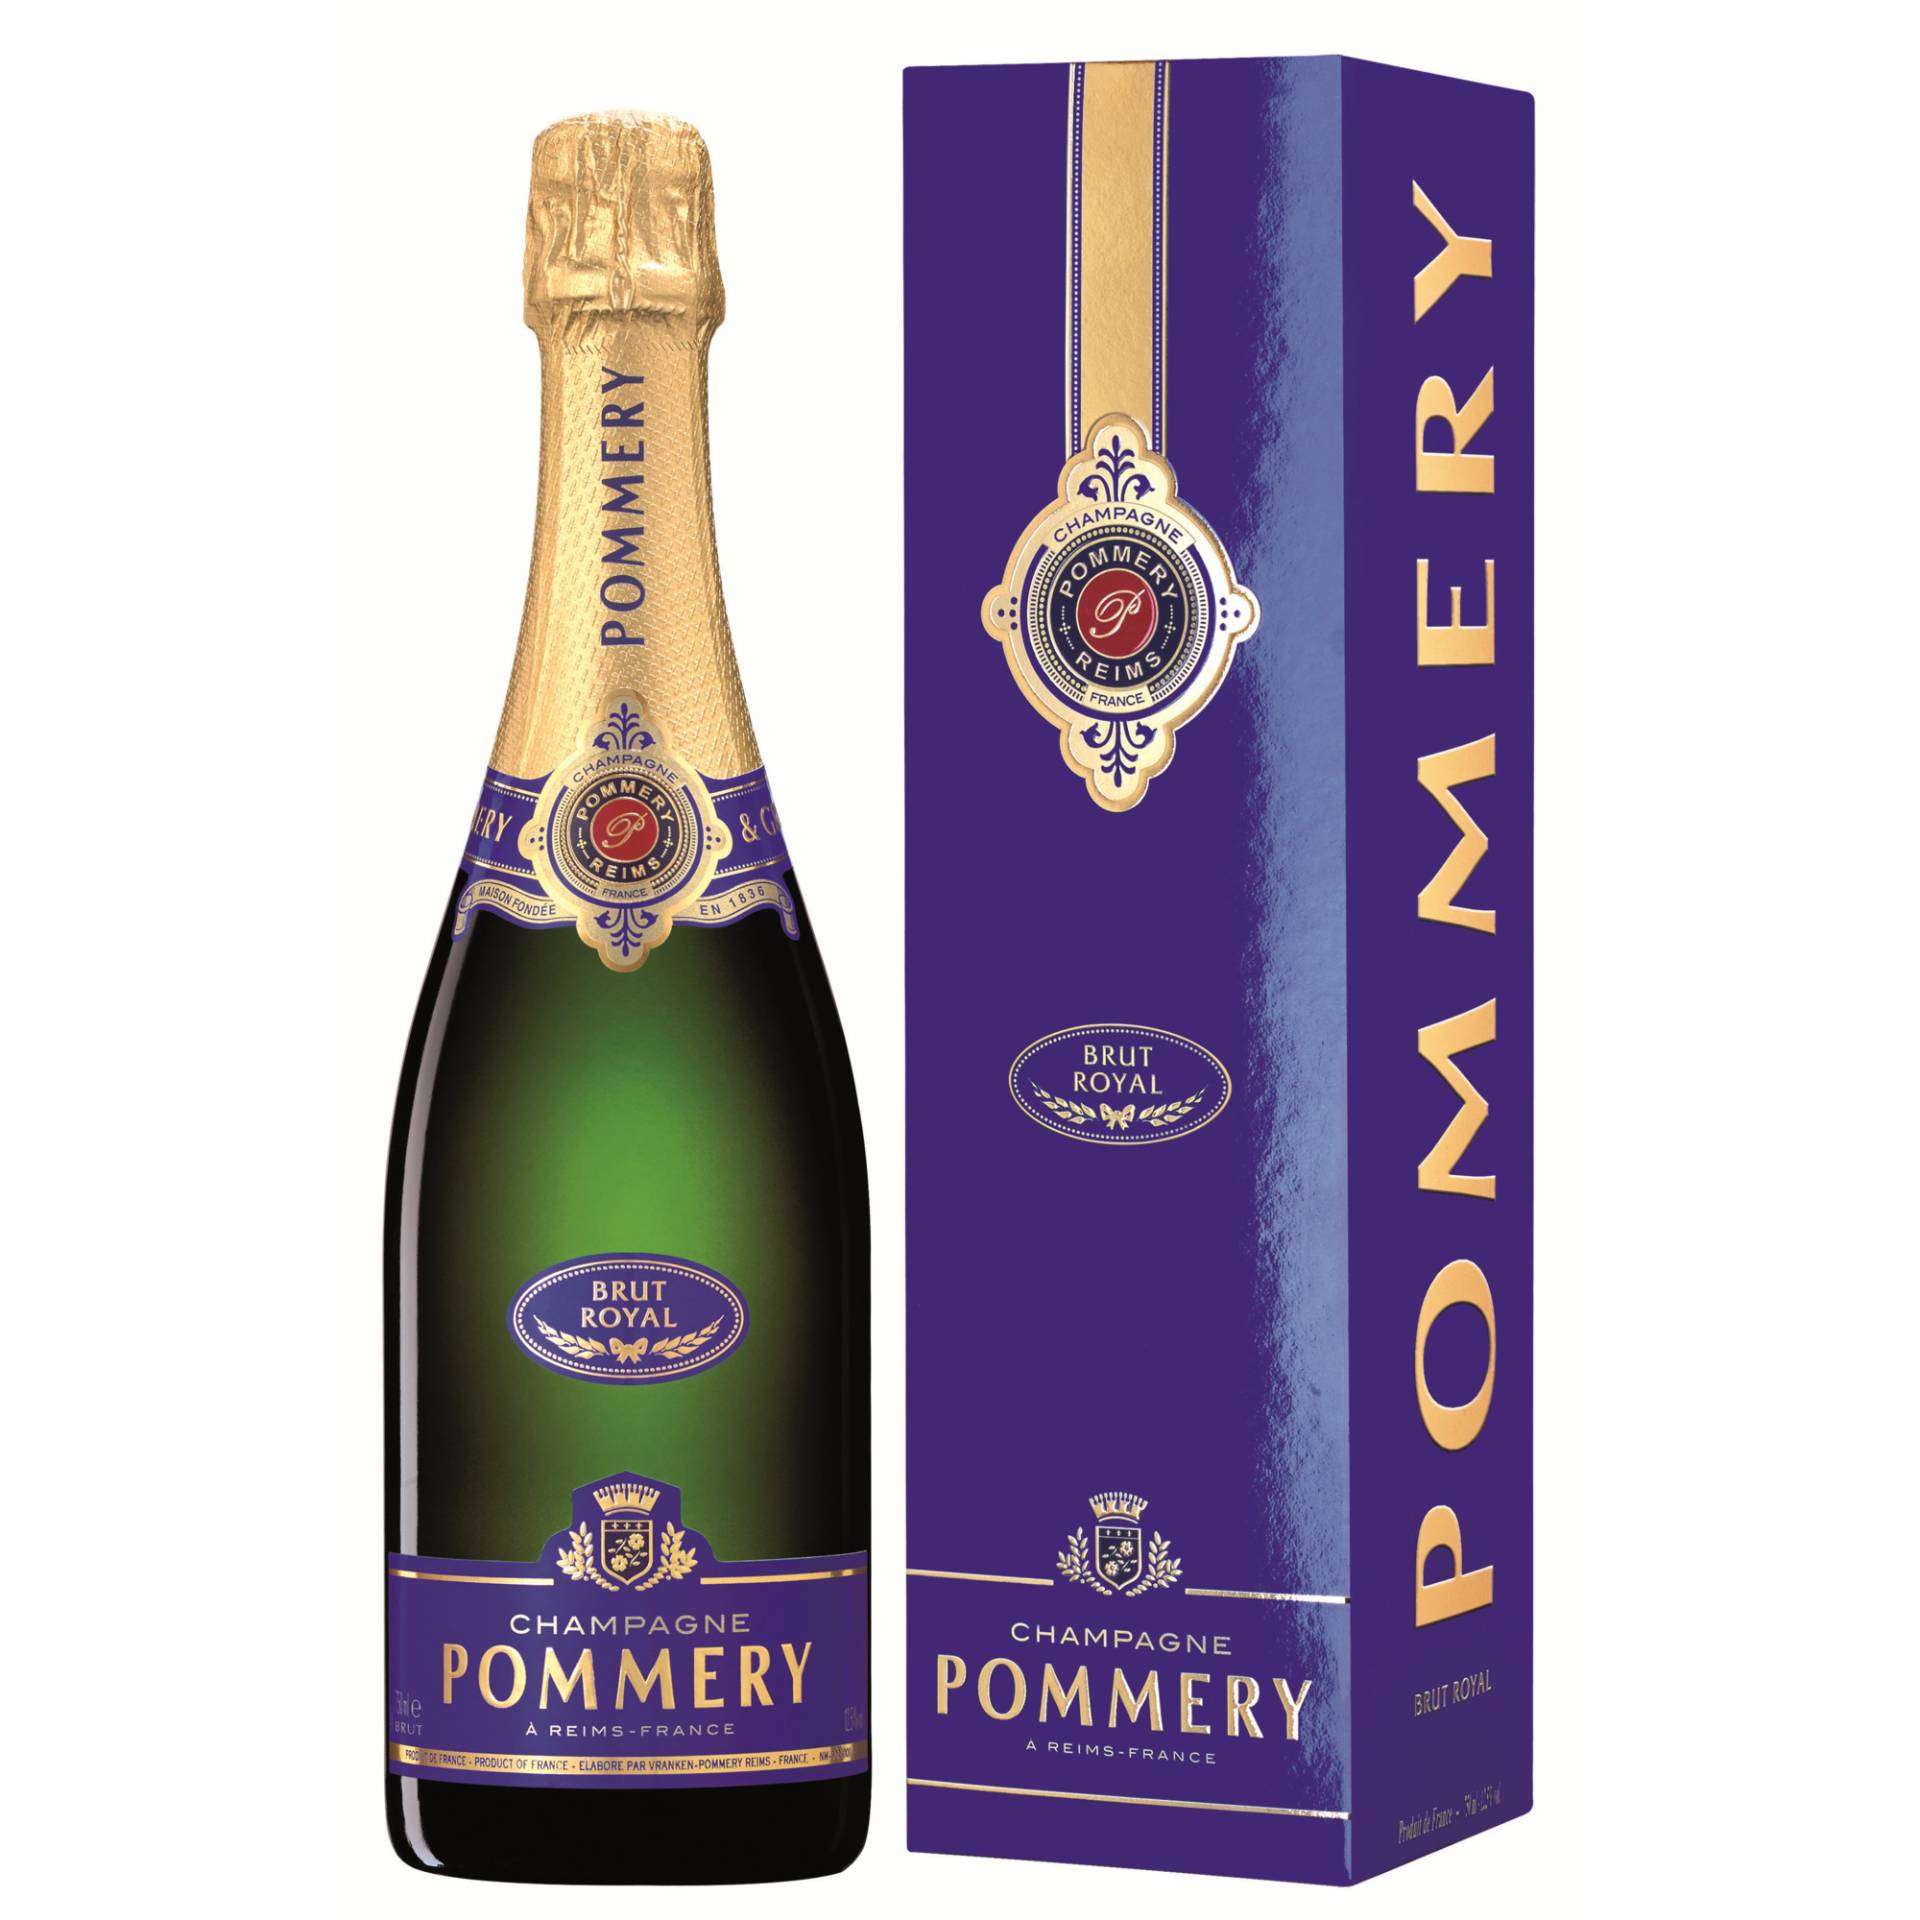 Champagne Pommery Royal, Brut, Champagne AC, Geschenketui, Champagne, Schaumwein von Vranken-Pommery - 51100 Reims - France